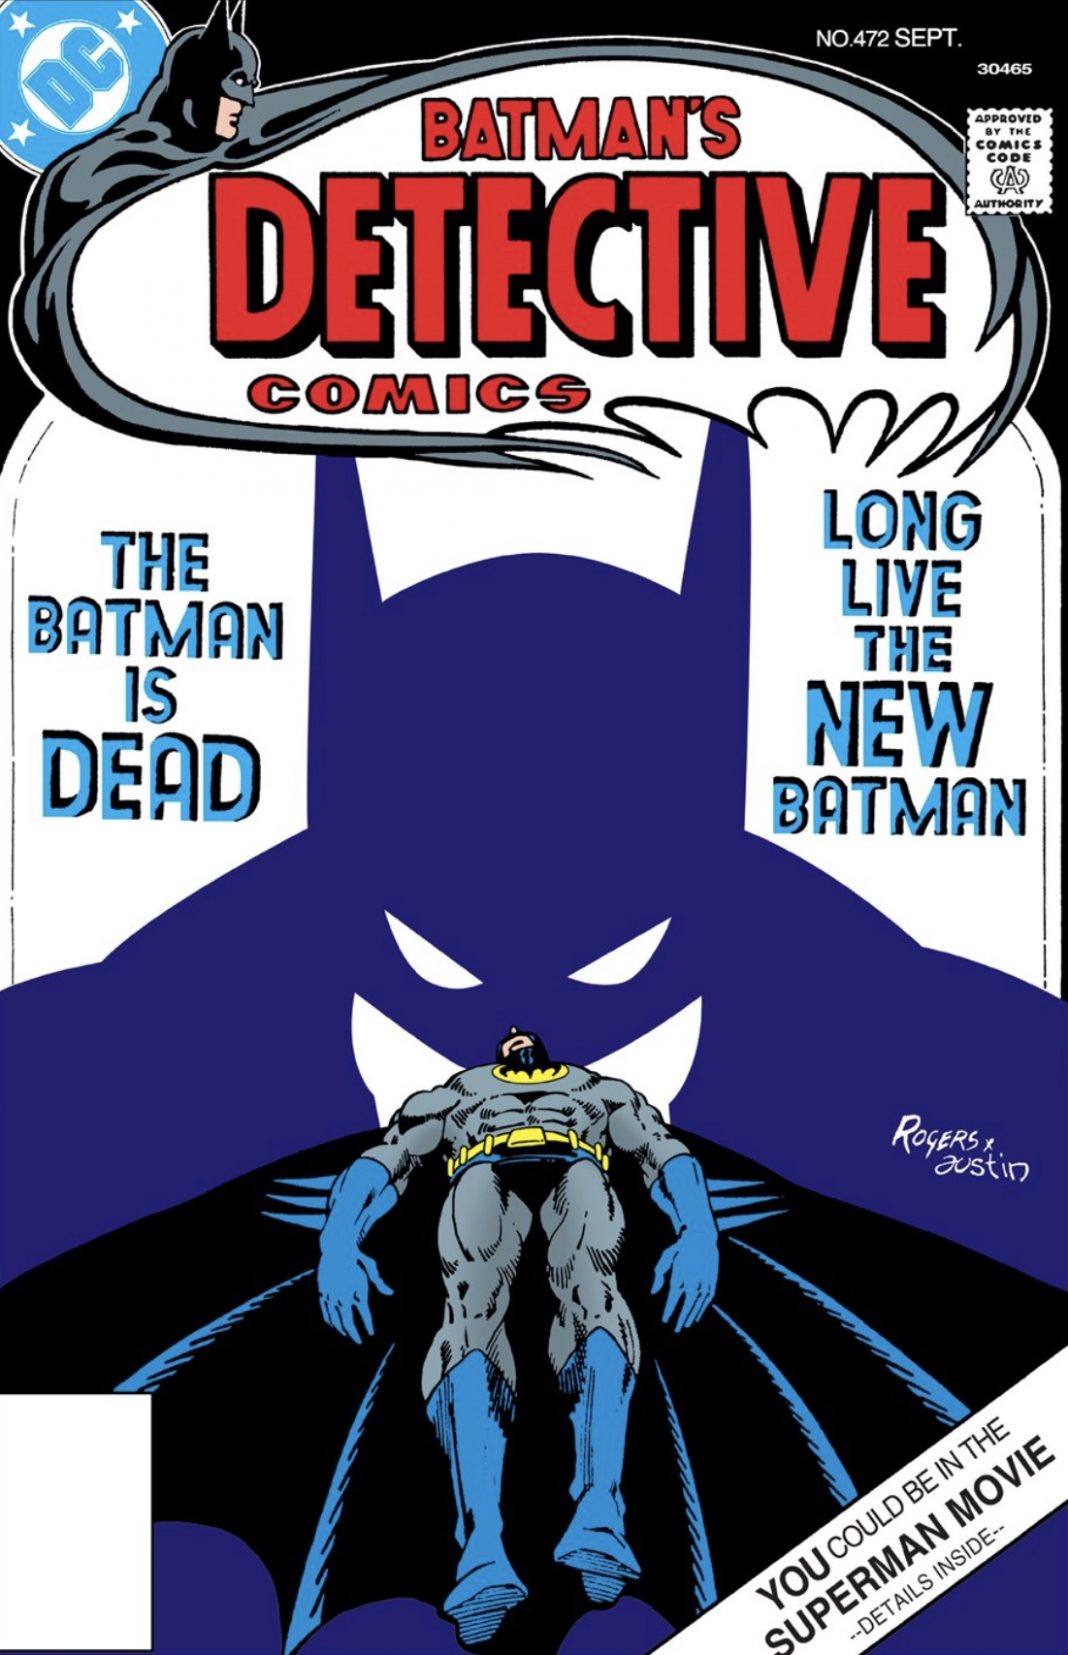 The Batman Chronicles #19 by Steve Englehart